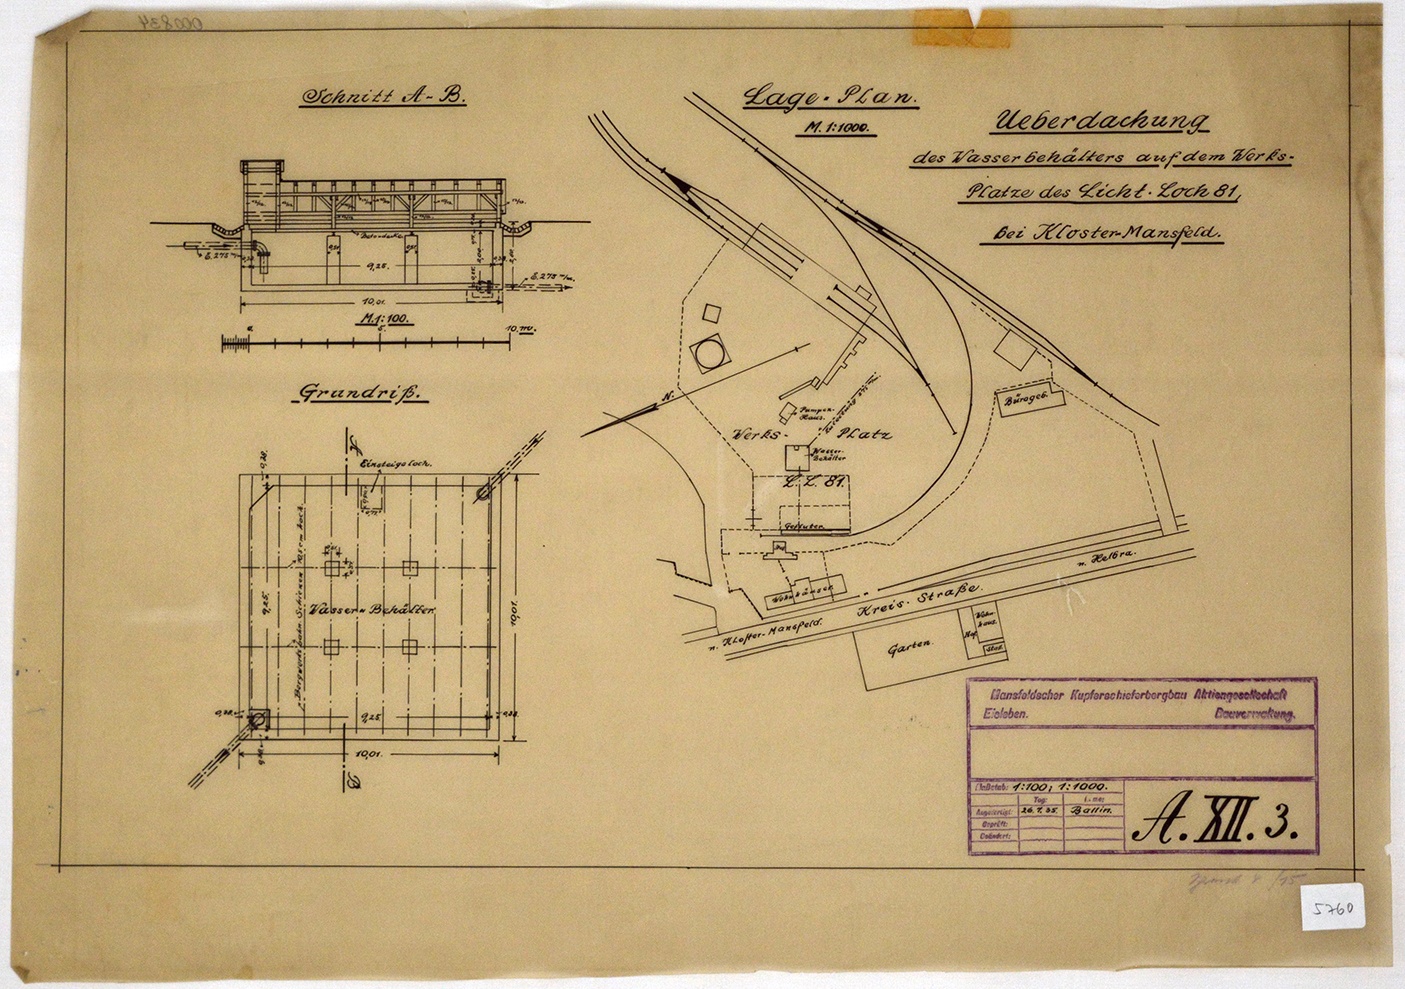 Lageplan Ueberdachung des Wasserbehälters auf dem Werks-Platze des Licht.Loch 81, bei Kloster-Mansfeld. (Mansfeld-Museum im Humboldt-Schloss CC BY-NC-SA)